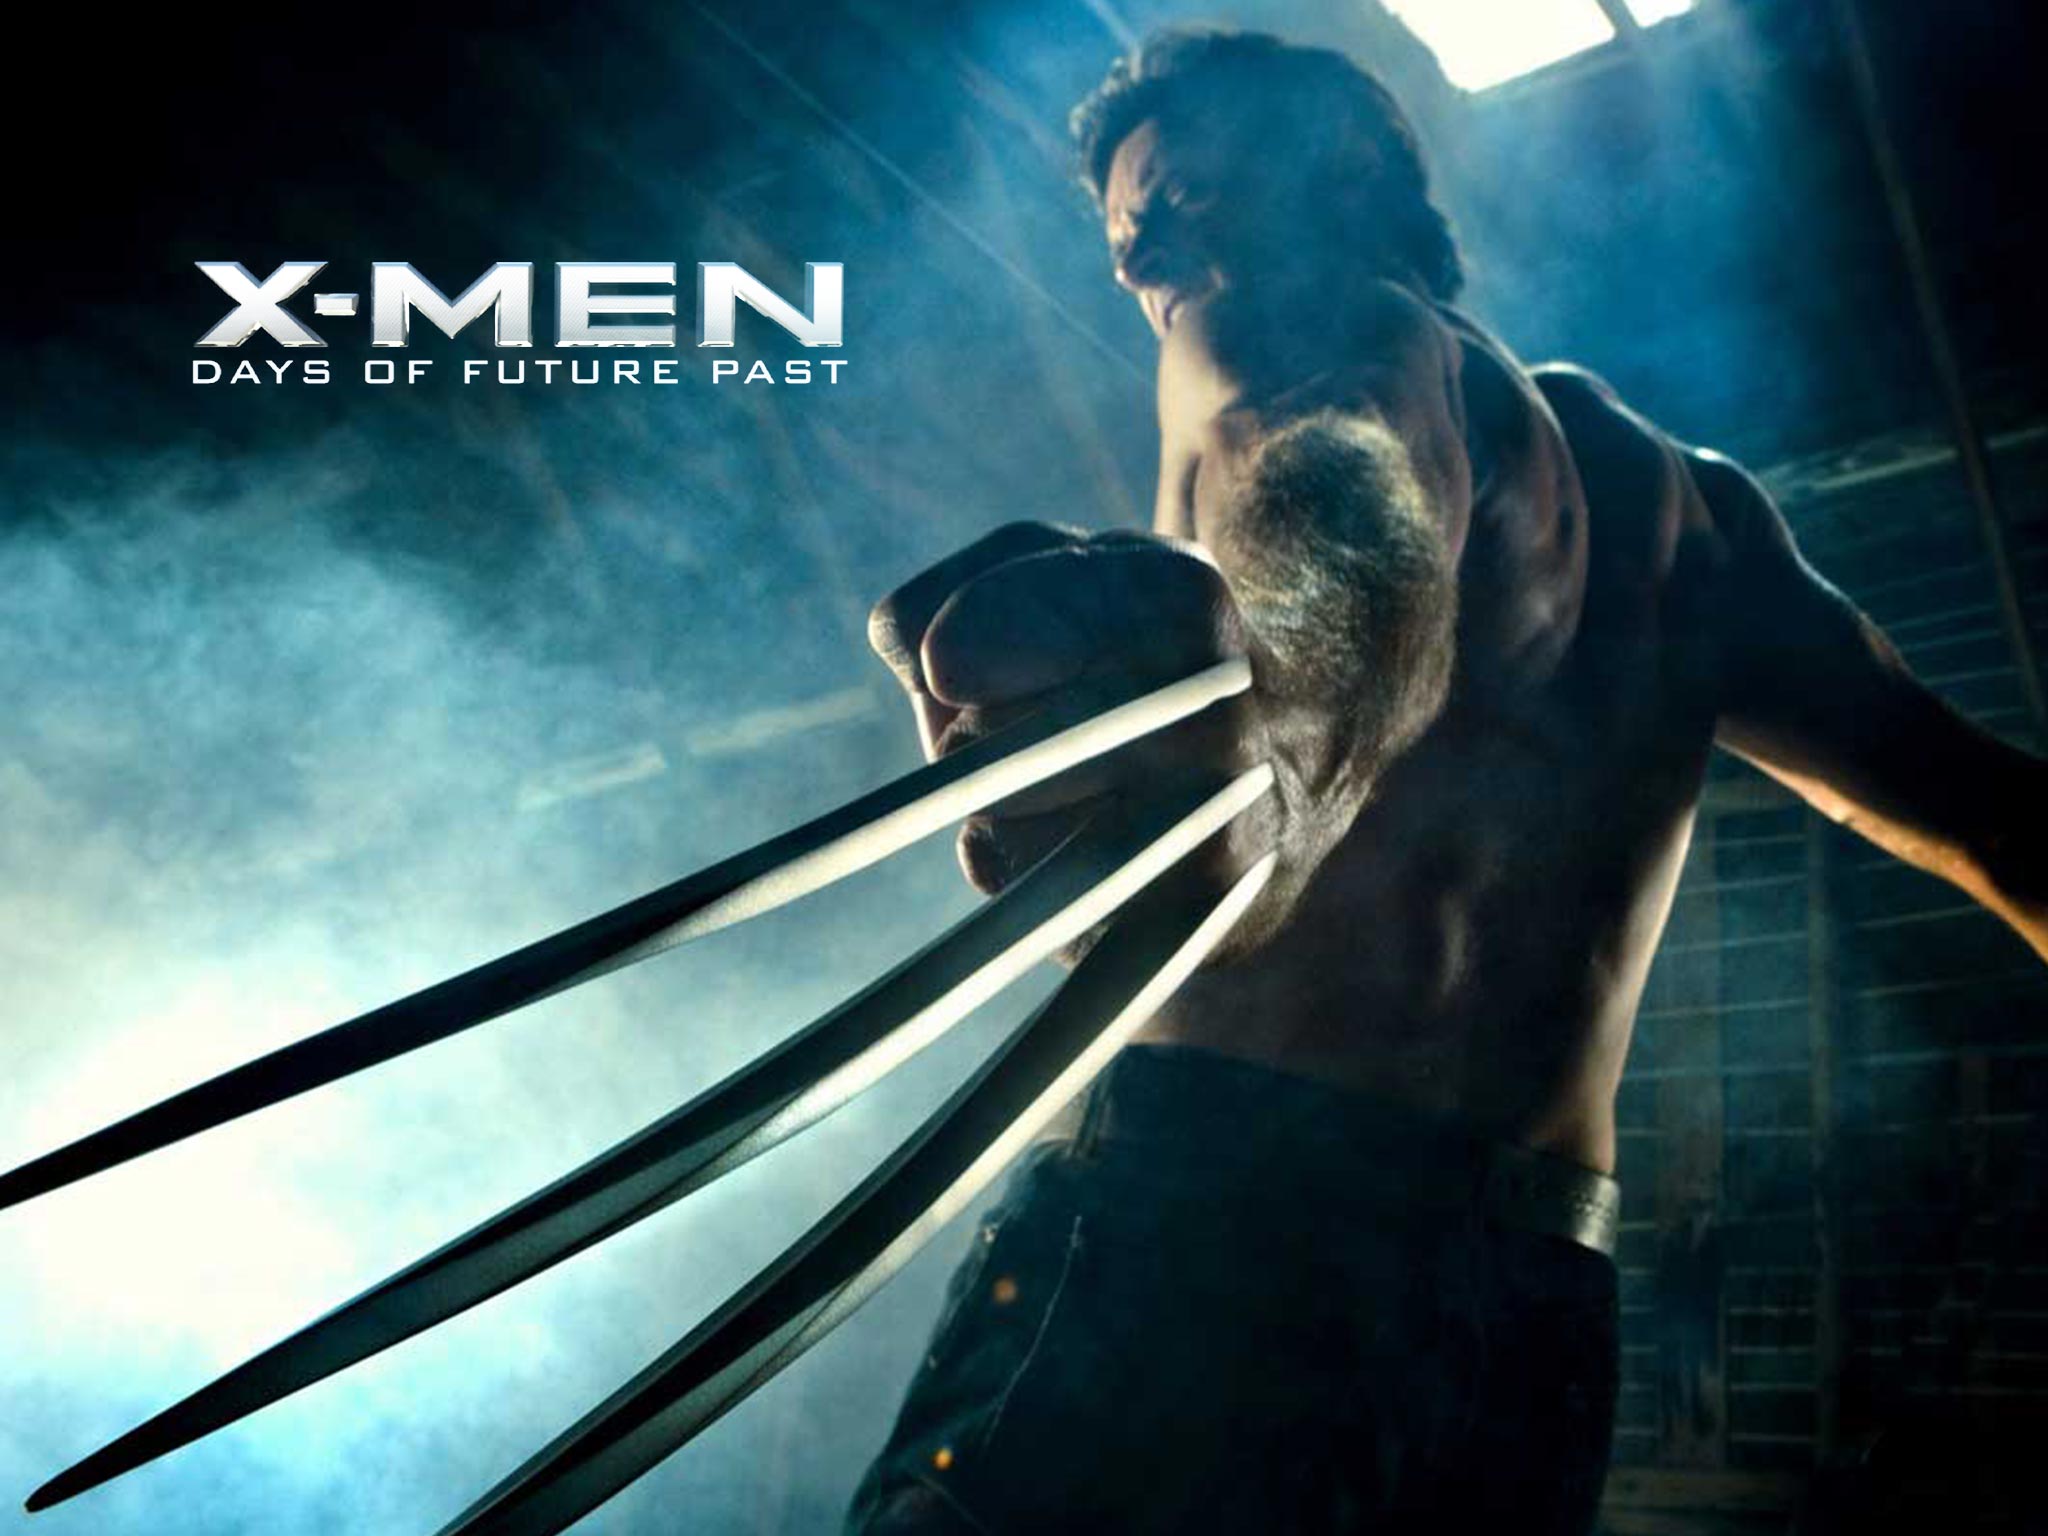 X-Men film series - Wikipedia